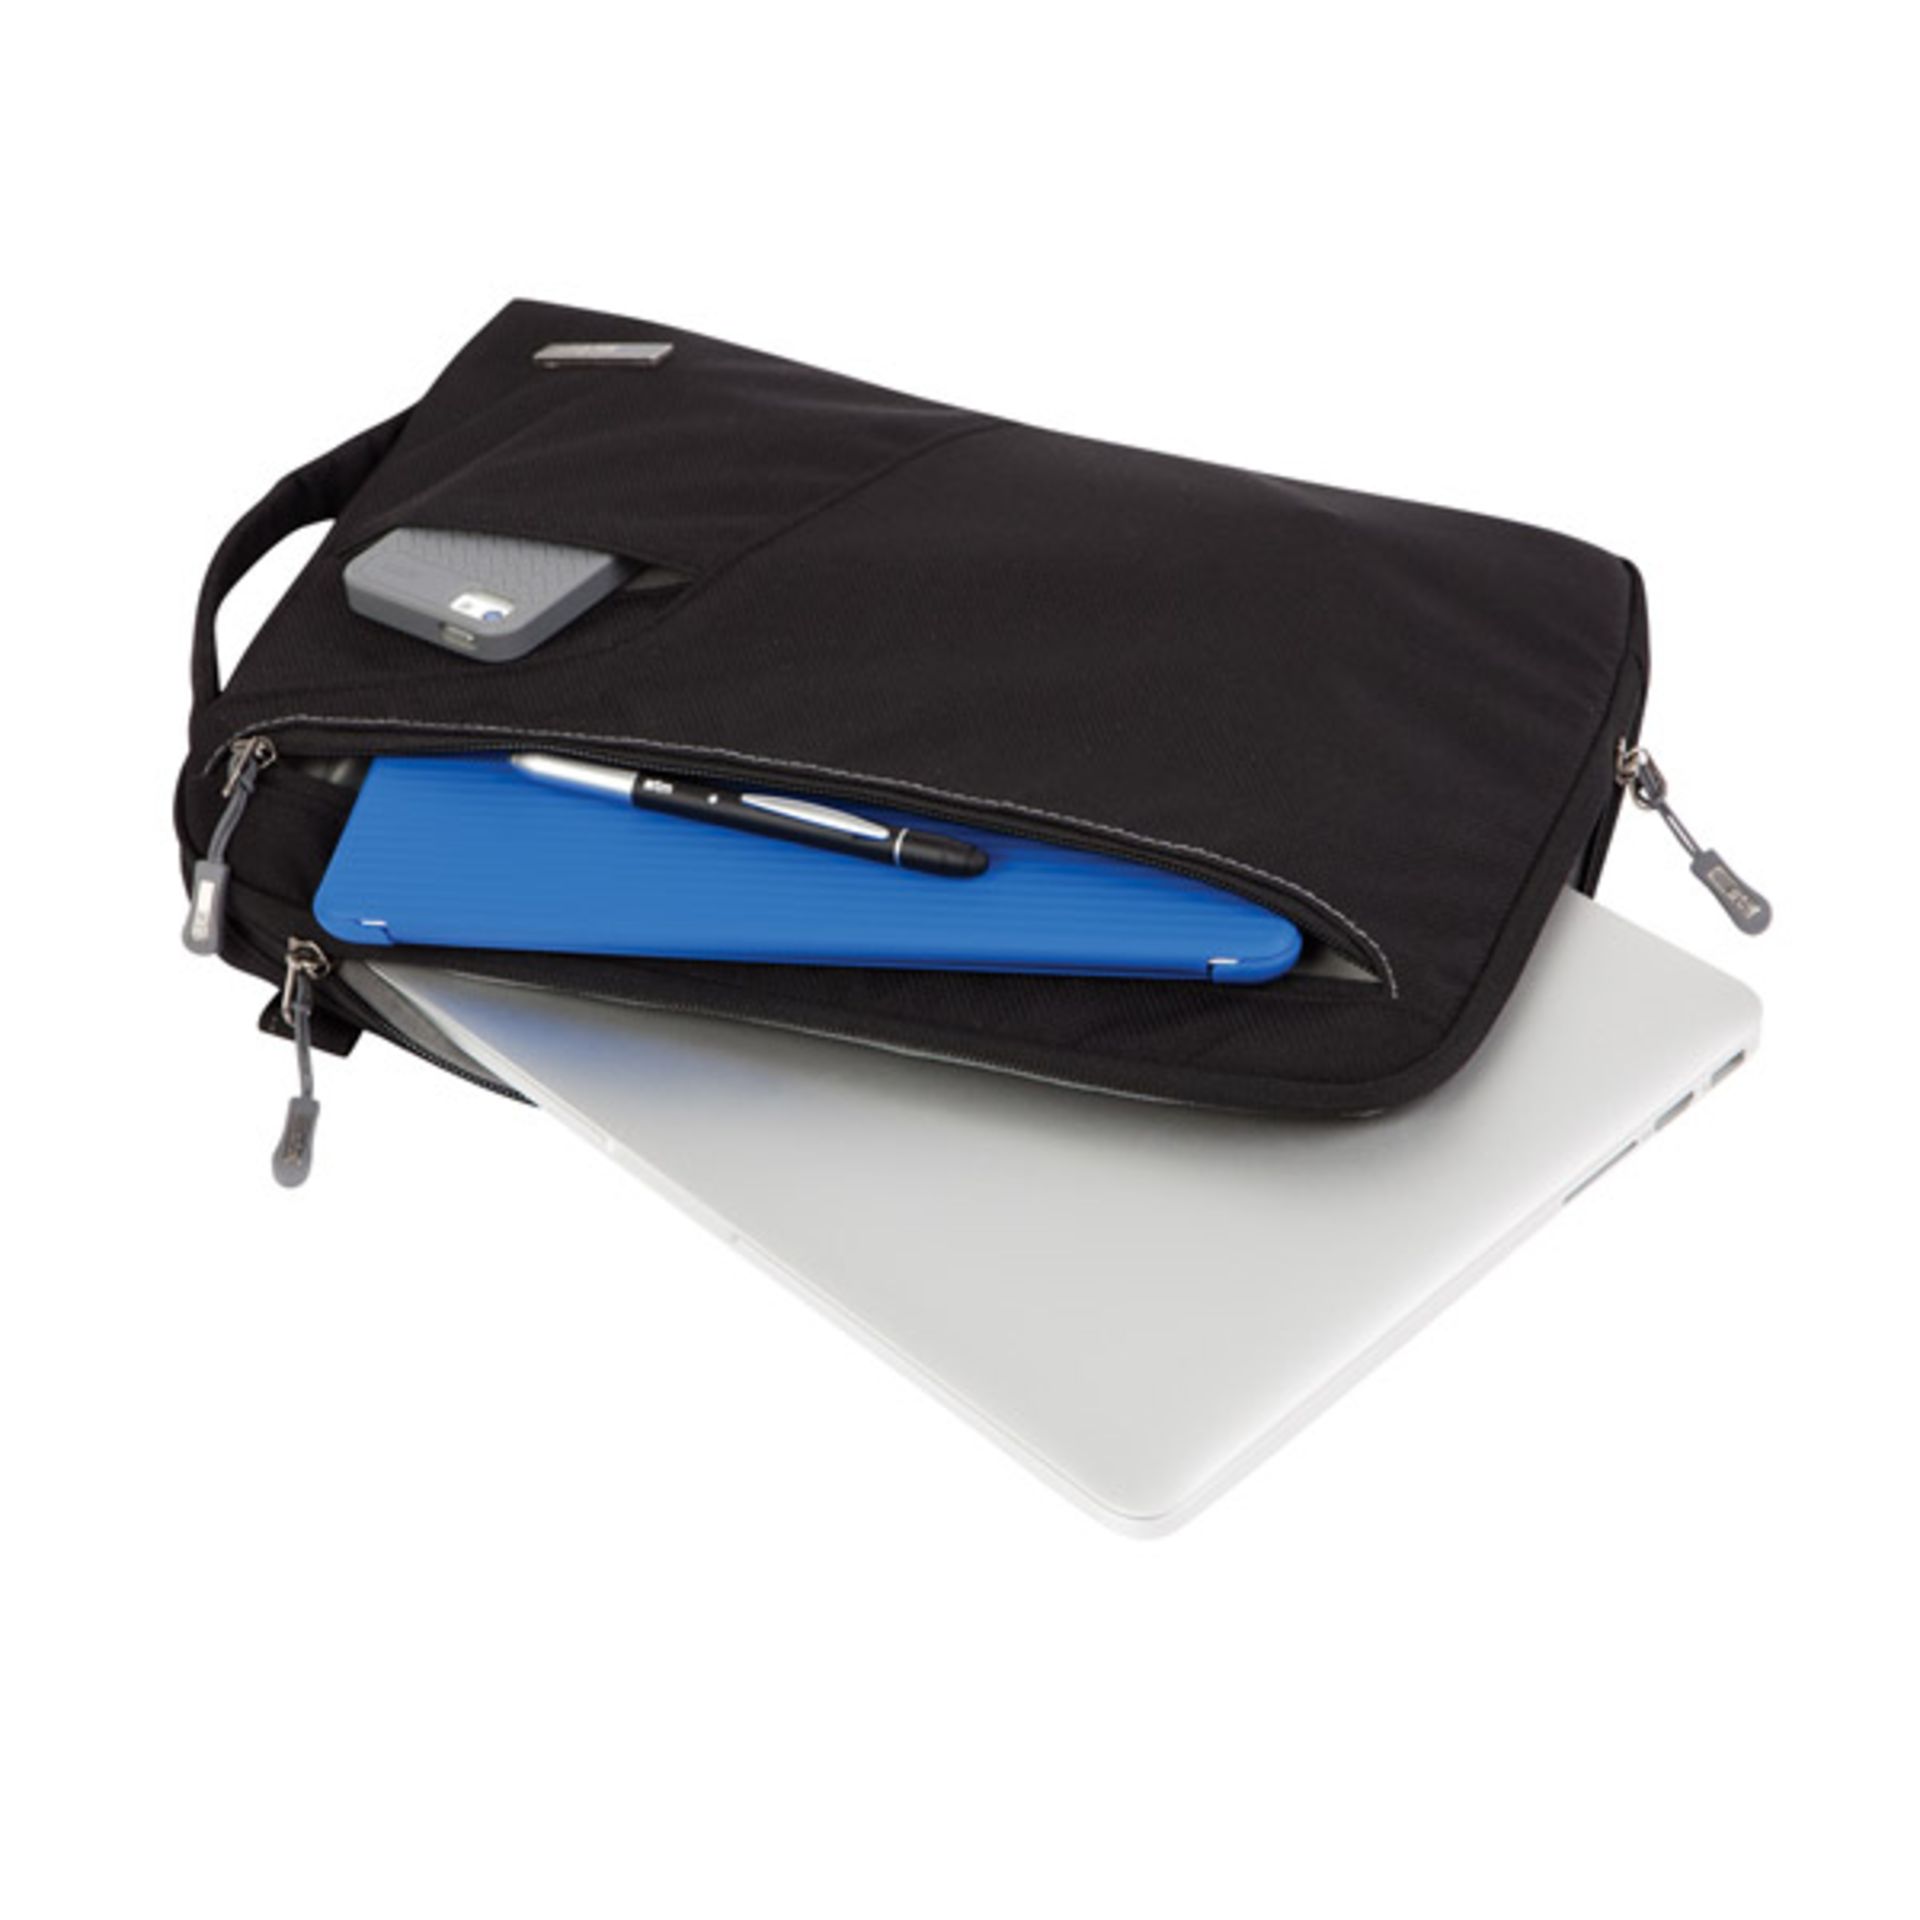 V Brand New STM Blazer Padded Sleeve Bag For Laptops And Tablets 11" Black With Removable Shoulder - Image 2 of 2